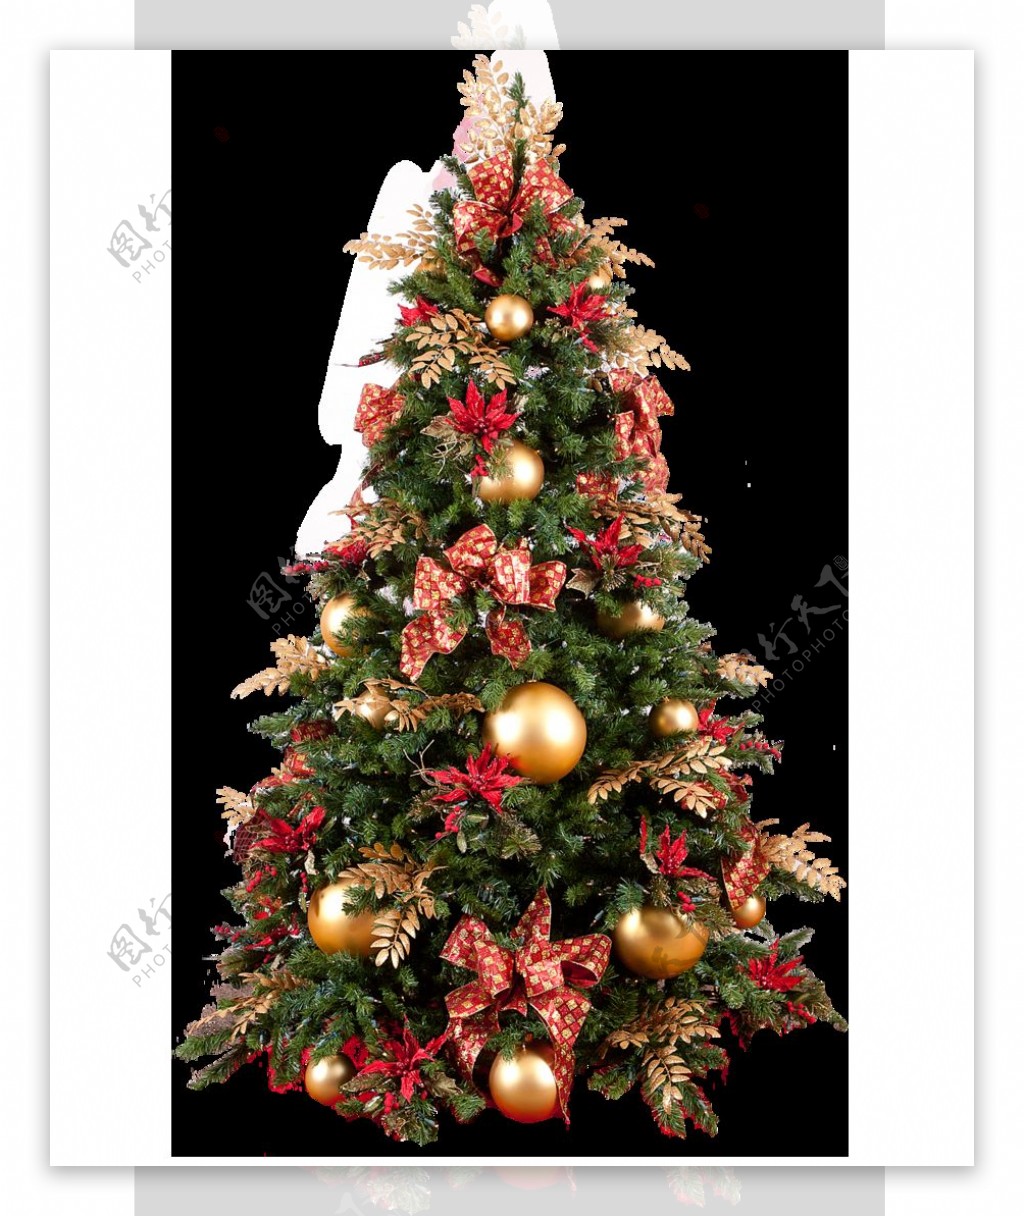 一棵挂满圣诞装饰的圣诞树图案